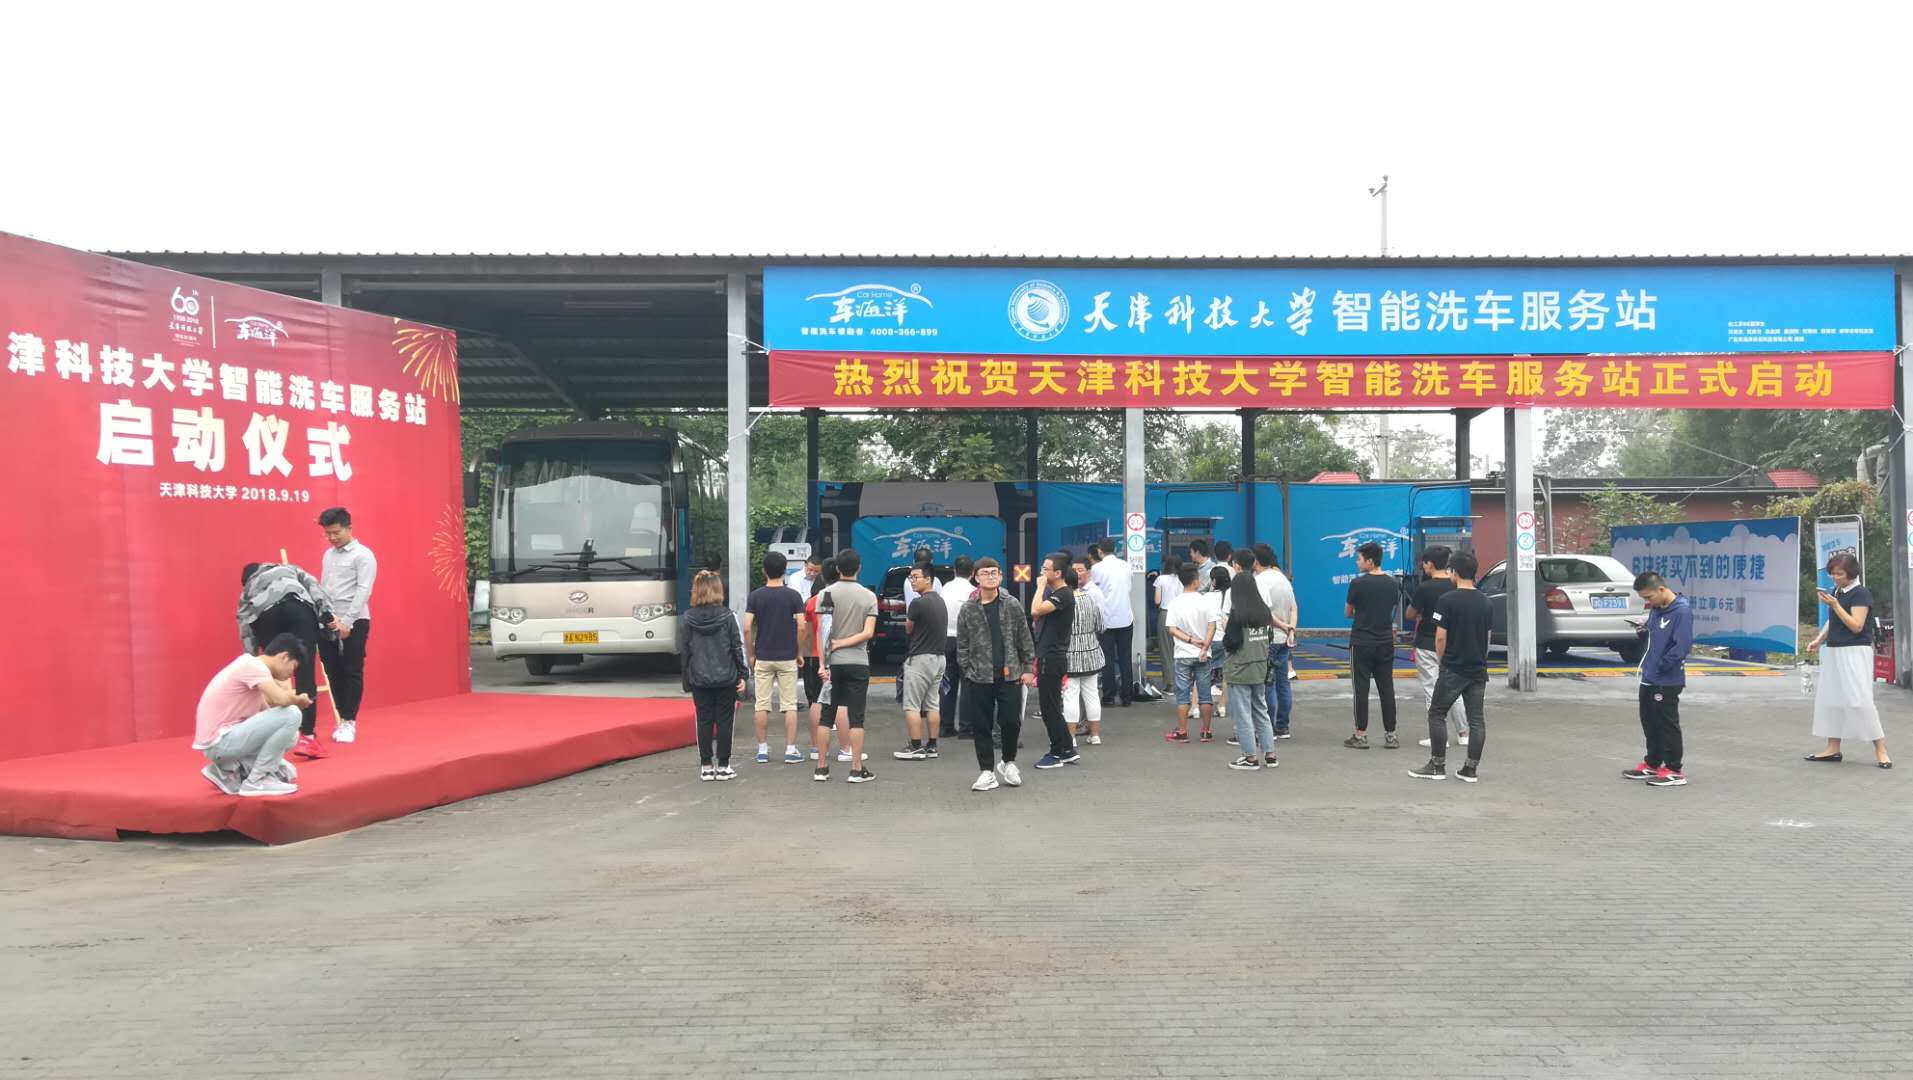 天津科技大学智能洗车服务站